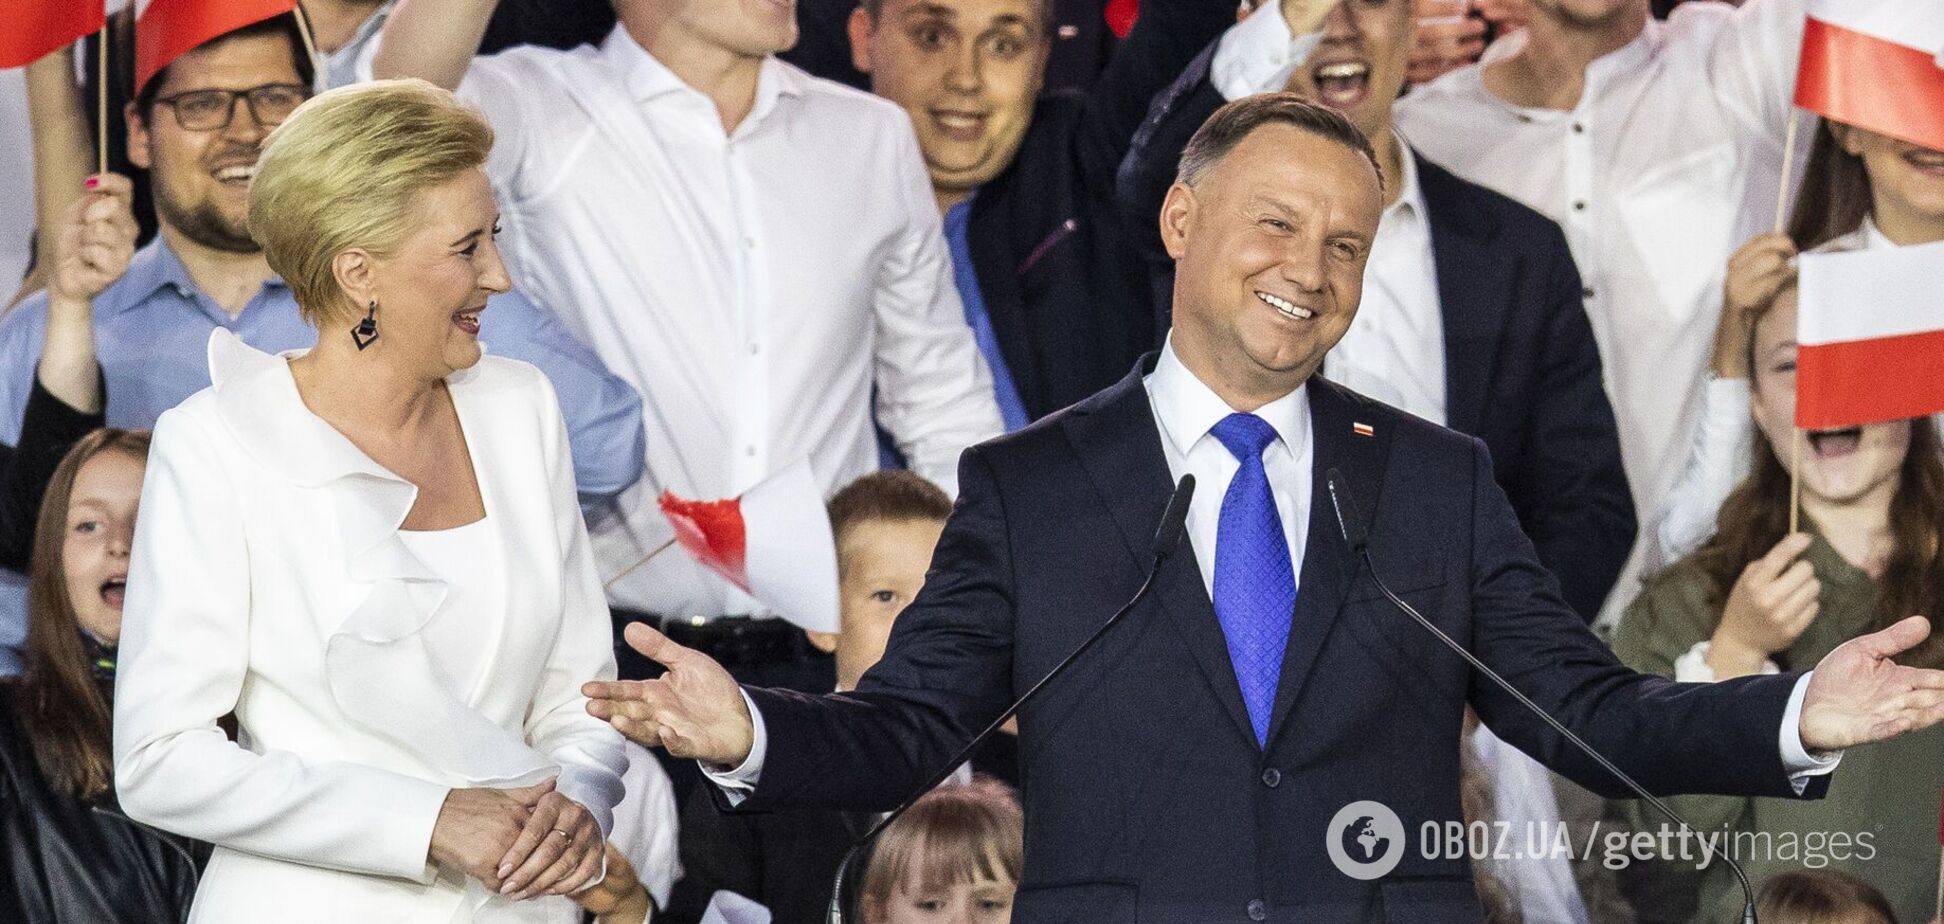 Верховный суд Польши признал победу Дуды на выборах президента